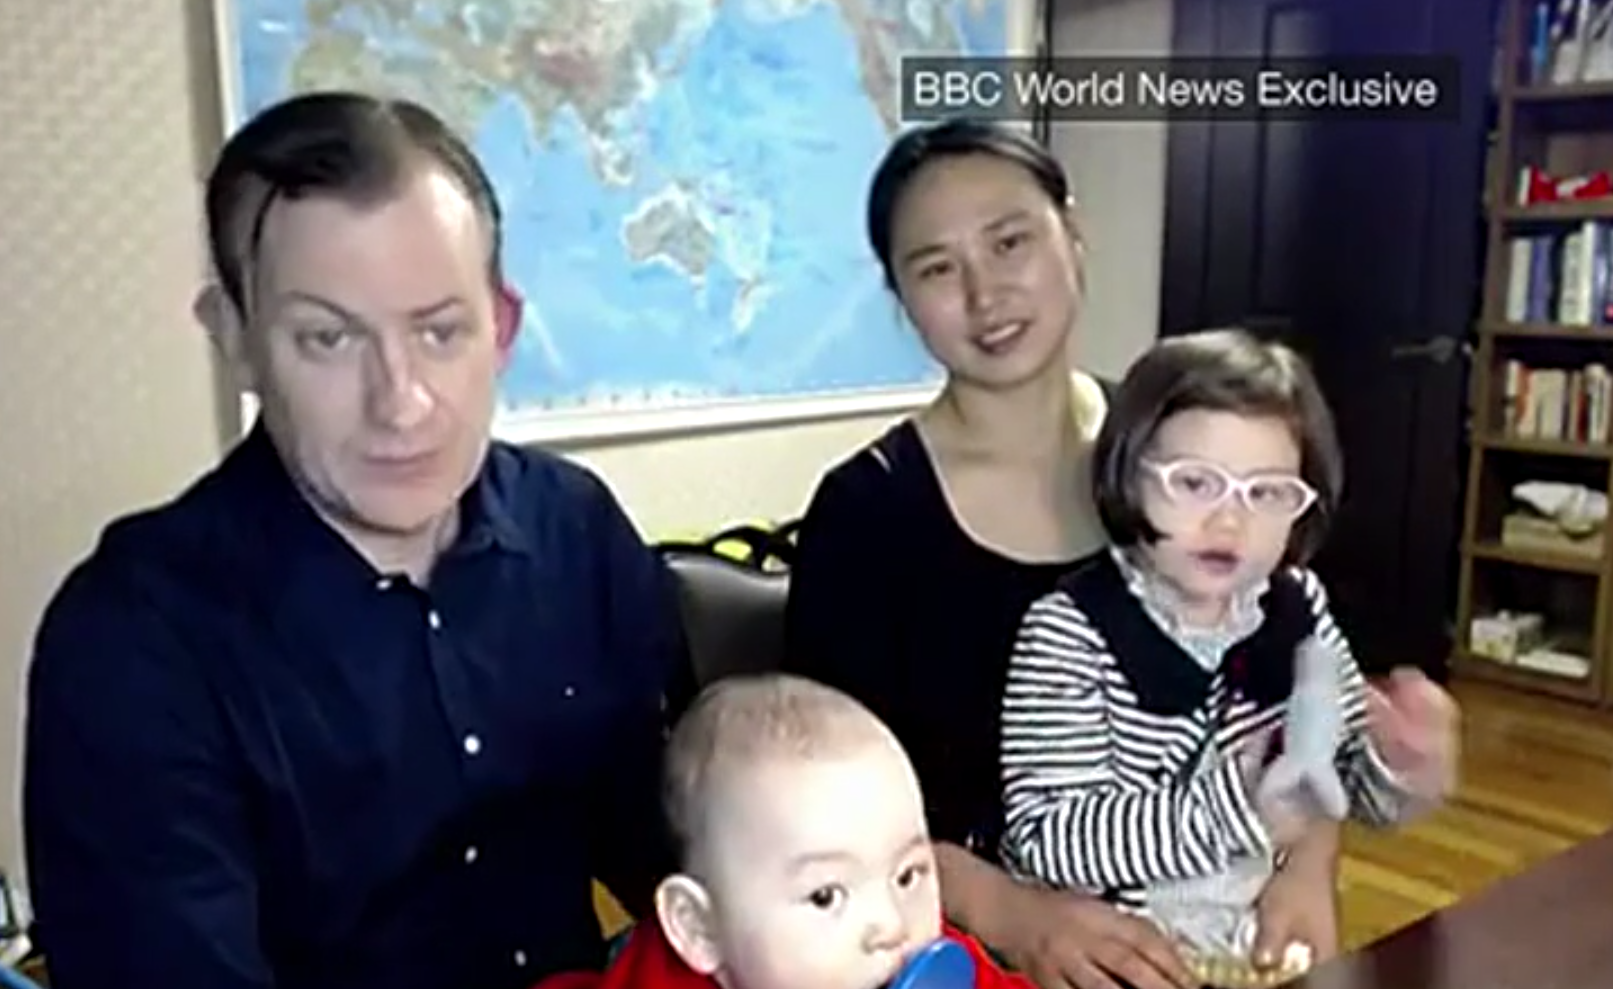 El professor i la família que s'han fet virals tornen a la BBC